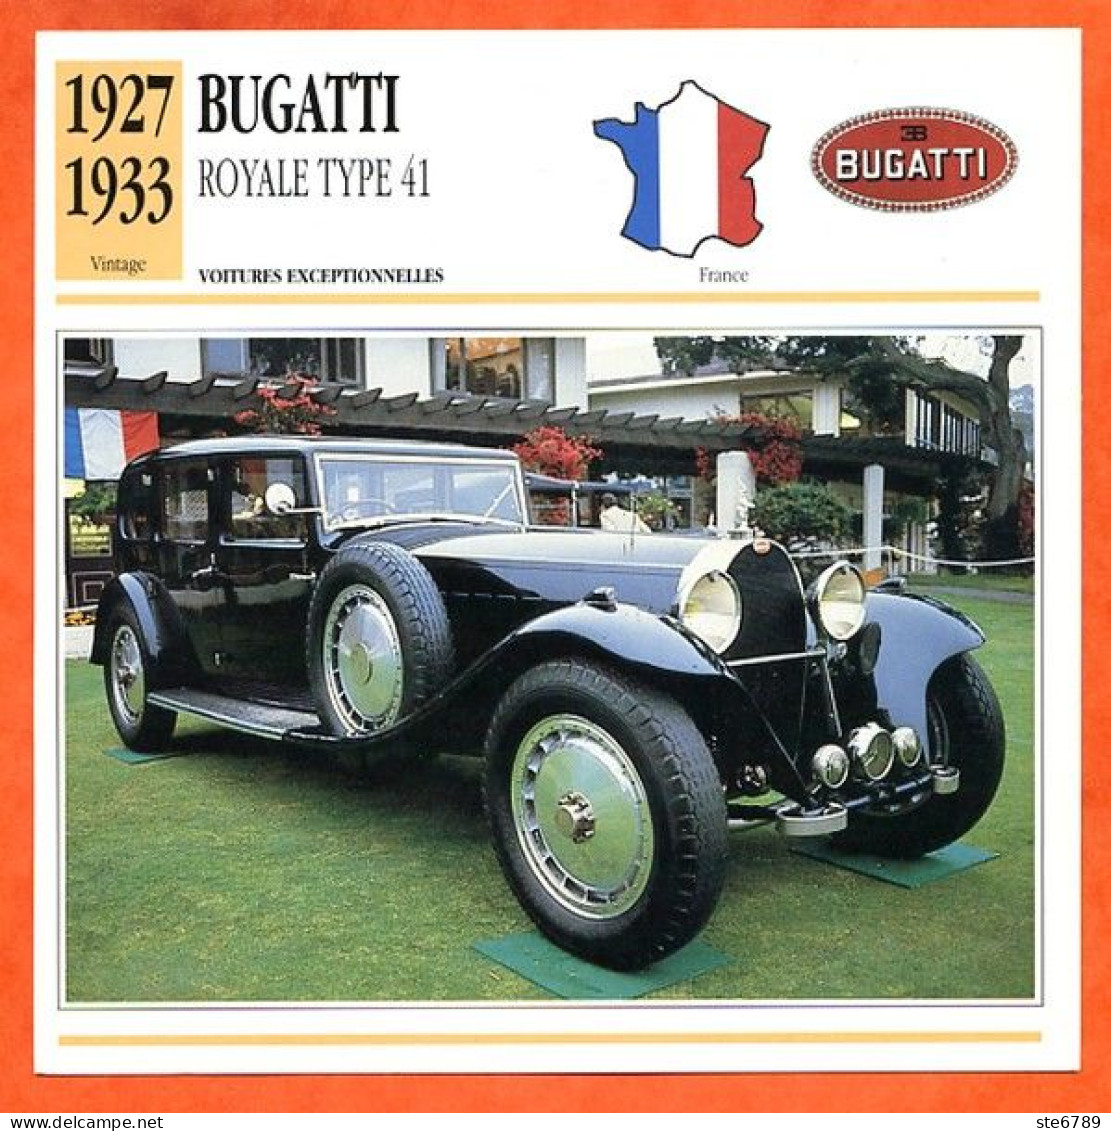 BUGATTI ROYALE TYPE 41  1927  Voiture  France  Auto Fiche Technique Automobile - Coches